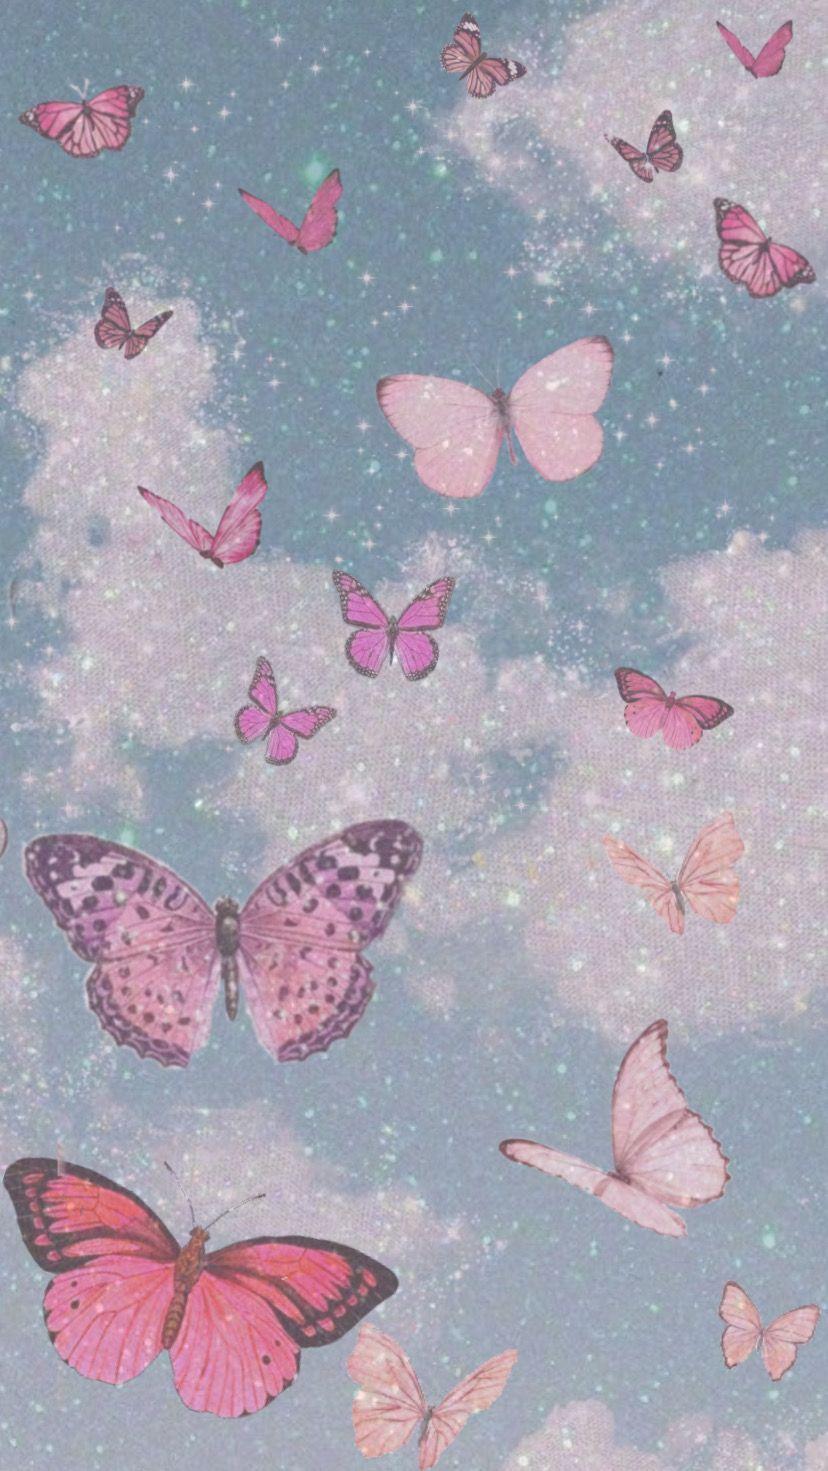 Hình ảnh bướm hồng trong bộ sưu tập này sẽ khiến bạn cảm thấy đáng yêu và nhẹ nhàng. Thông qua việc sử dụng tông màu hồng nhạt, nơi đắp đổi giữa sự hoàn hảo và sự dịu dàng, và tạo ra một tác phẩm hoàn hảo để trang trí điện thoại của bạn.